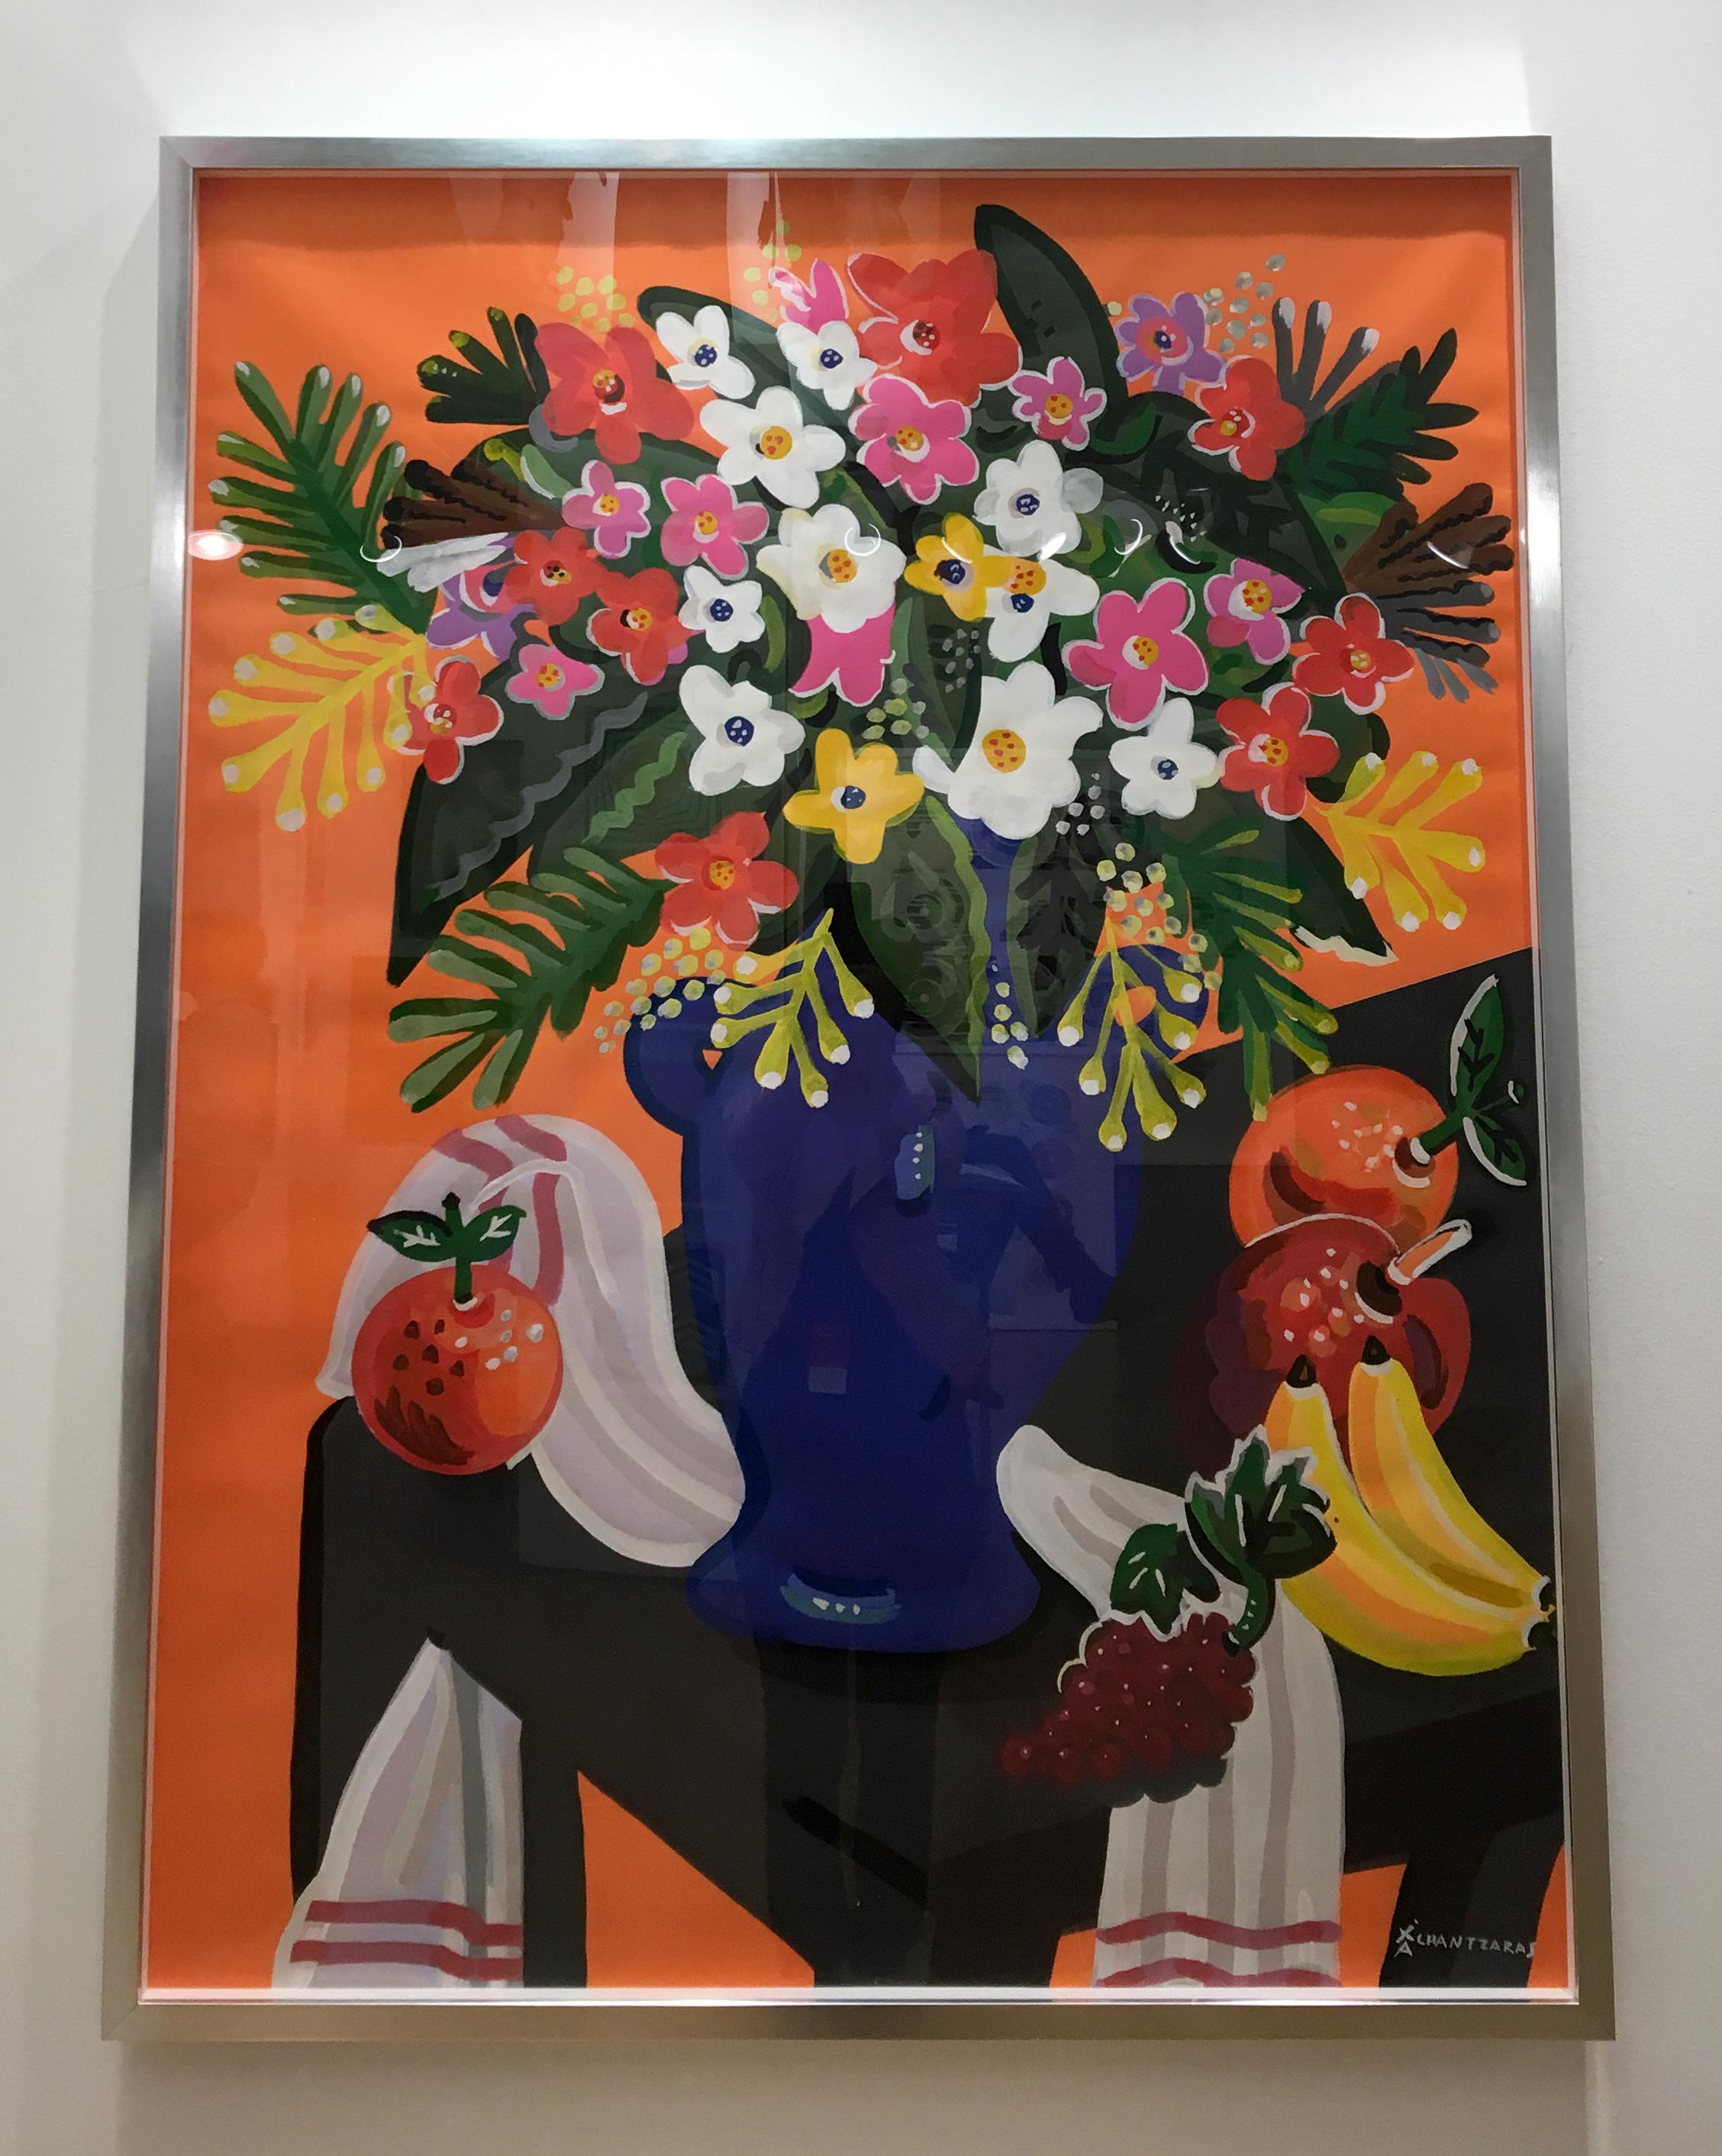 Bouquet, peinture de nature morte colorée Pop art en forme de fleur, fond orange - Painting de Apostolos Chantzaras